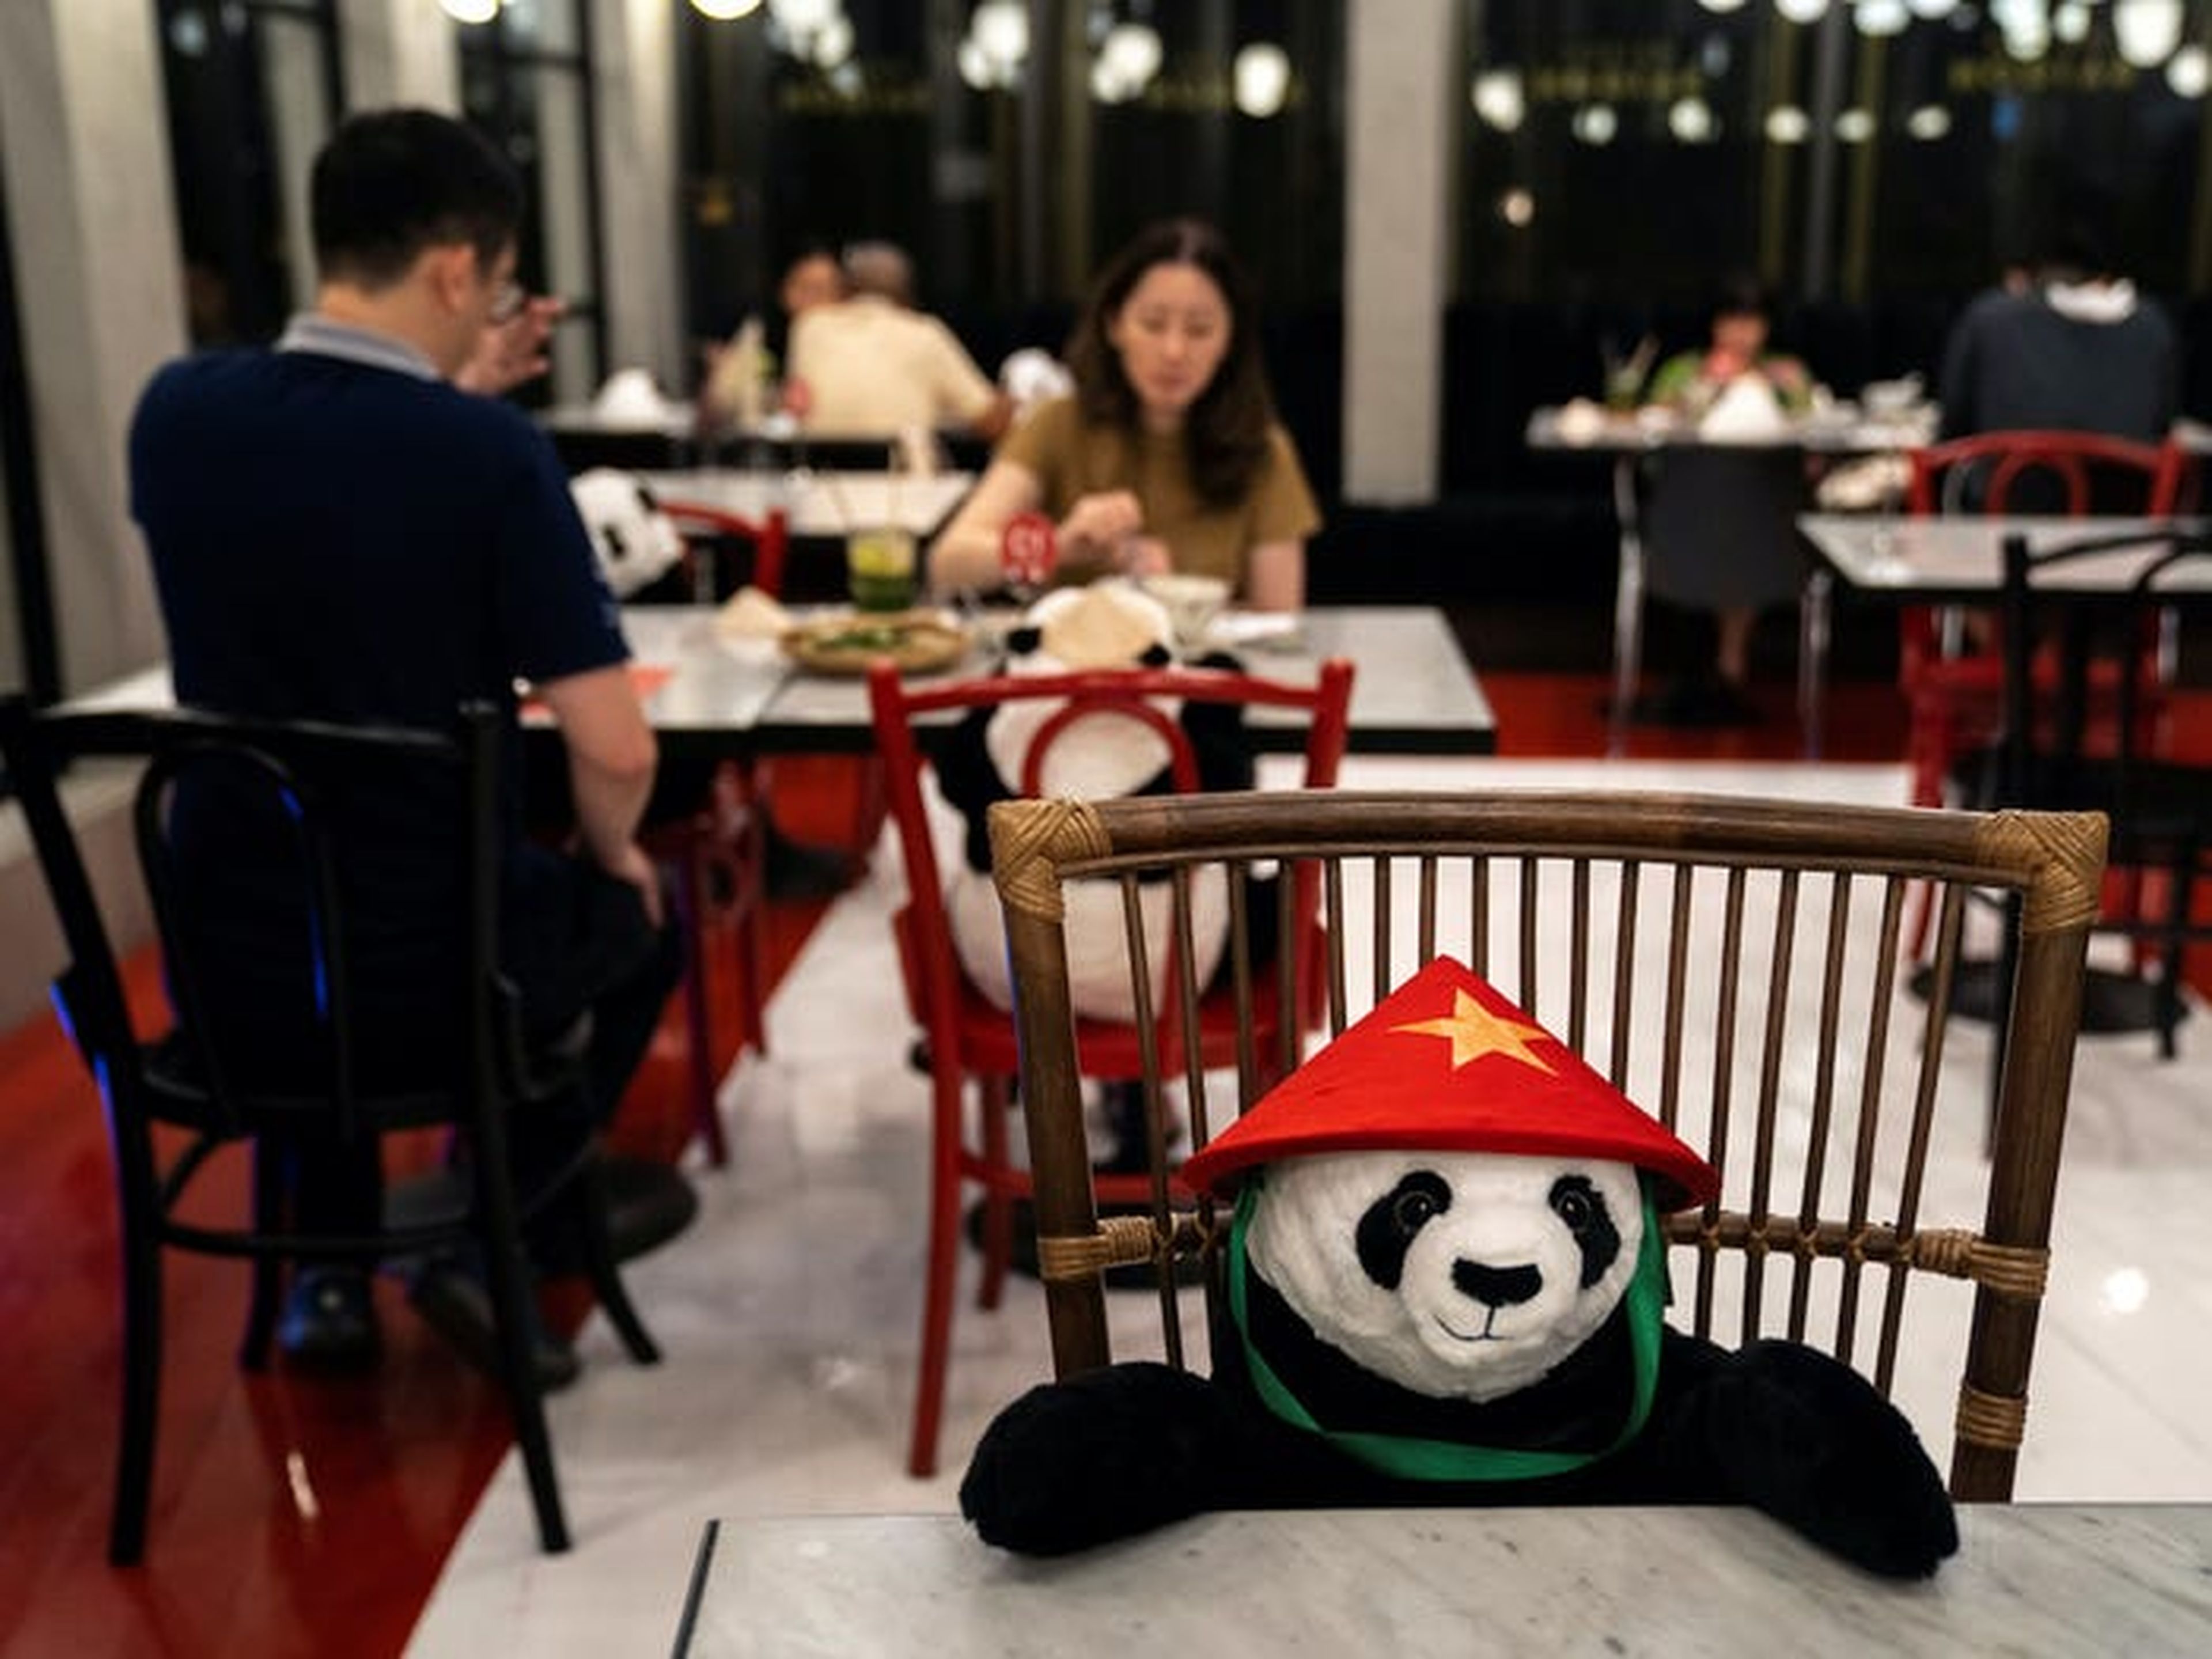 Los osos panda están en las mesas como estrategia para promover el distanciamiento social.